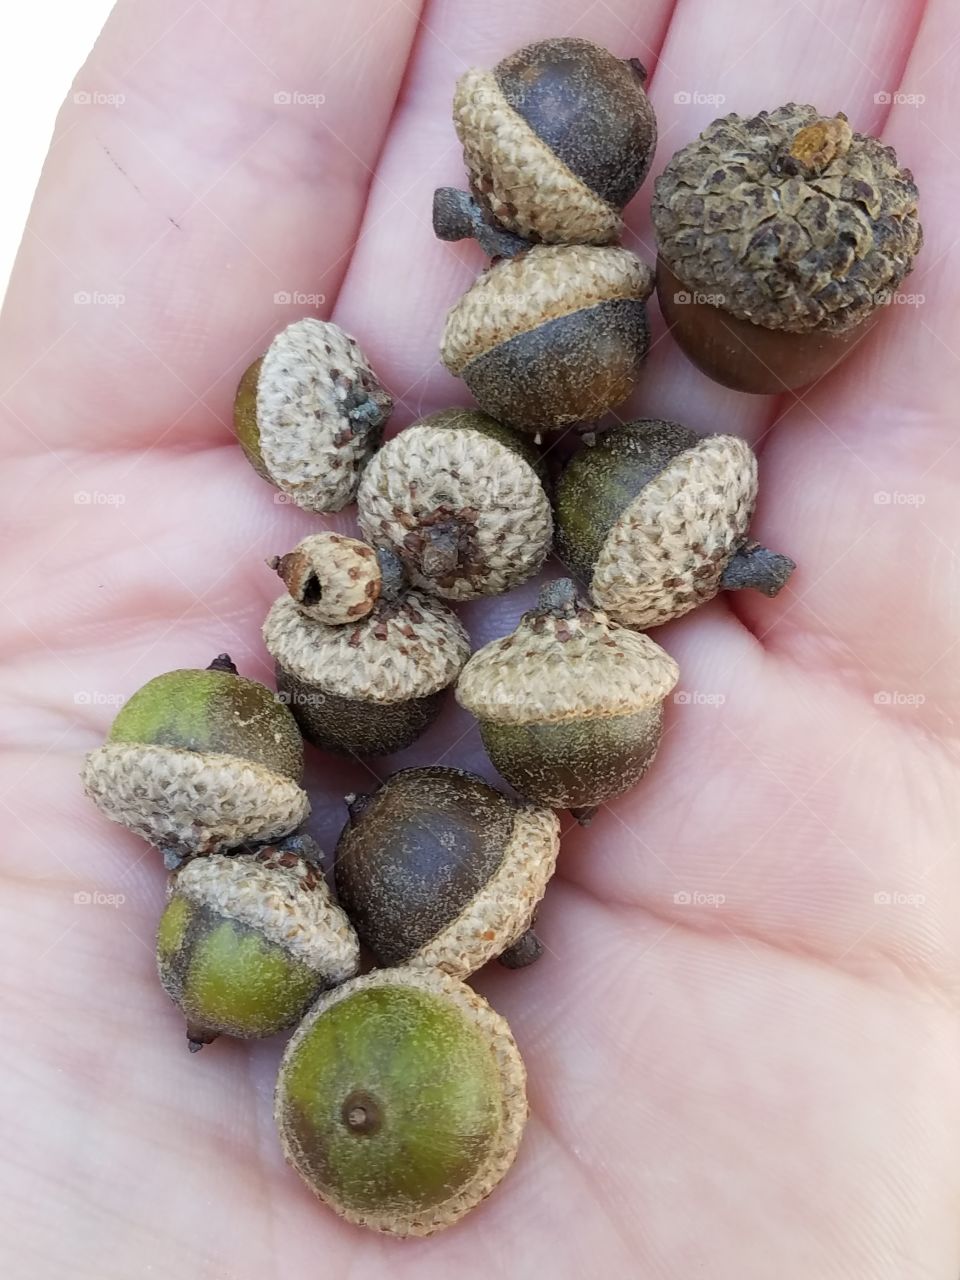 so many acorns